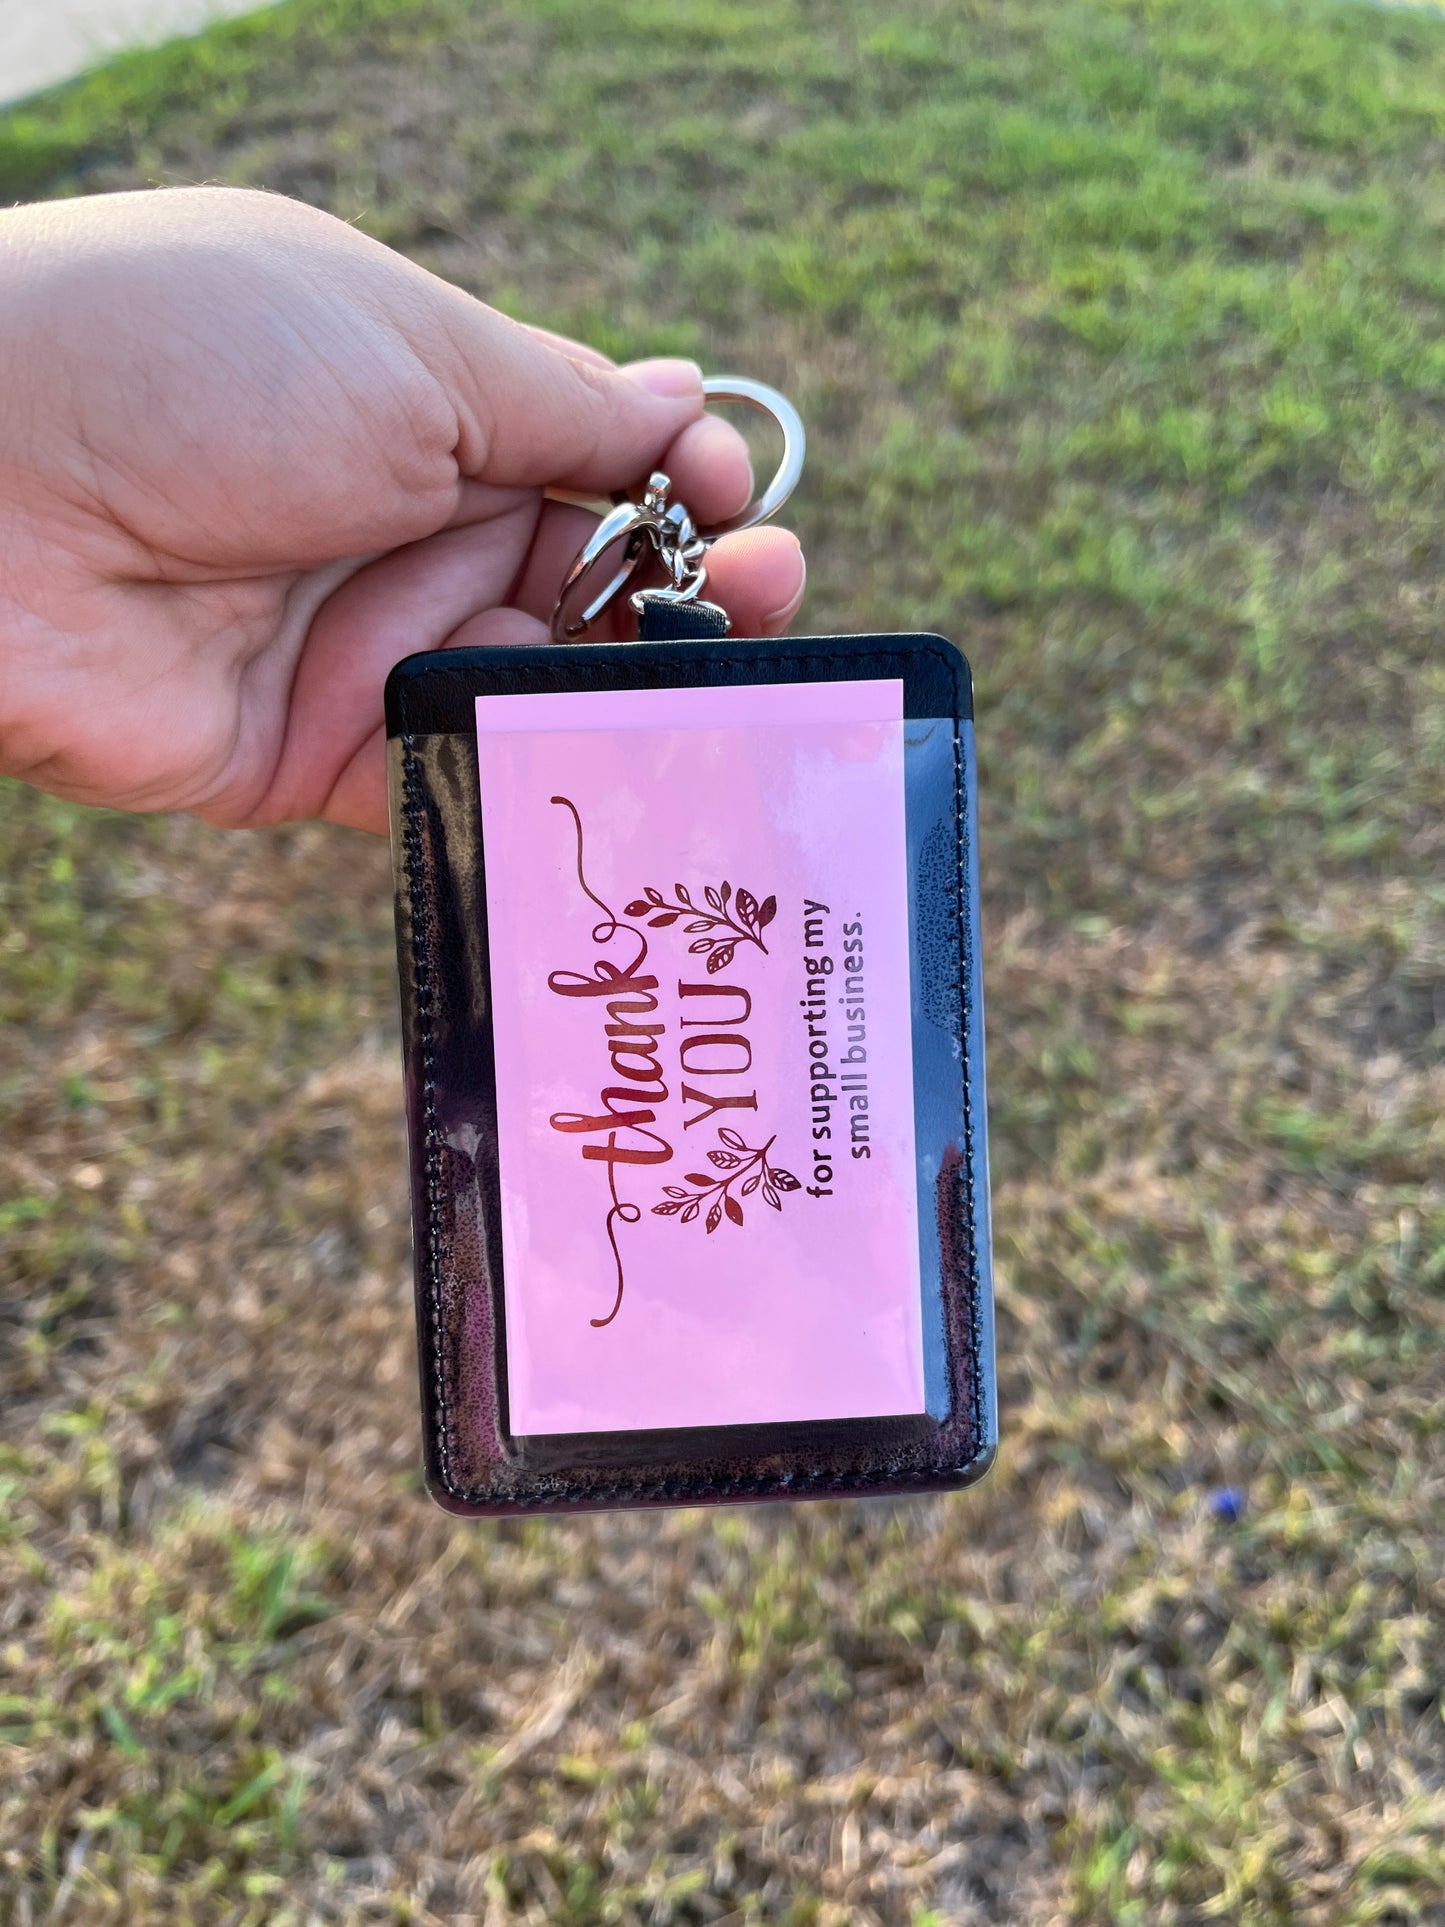 Mañana Sera Bonito Card Holder Keychain | Bichota Season